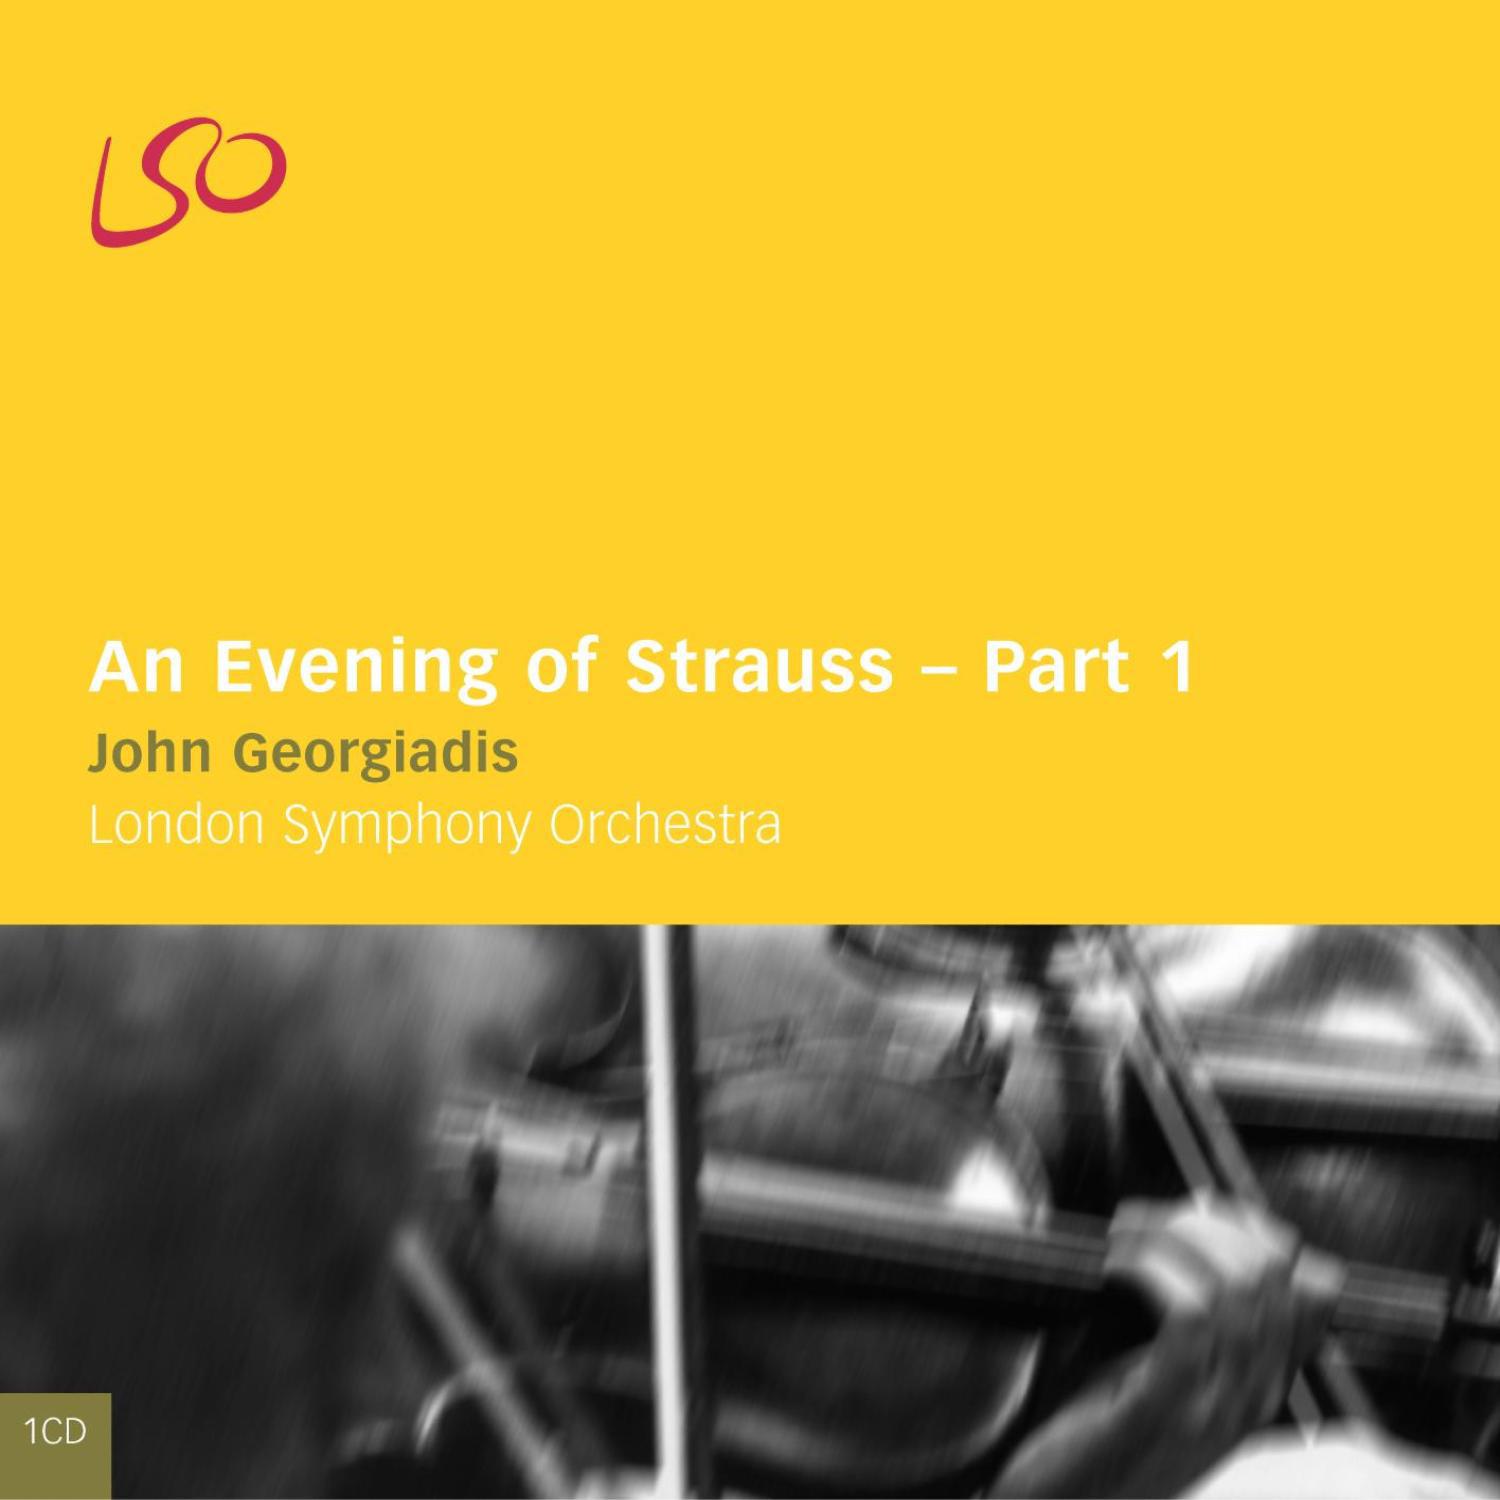 An Evening of Strauss Part 1